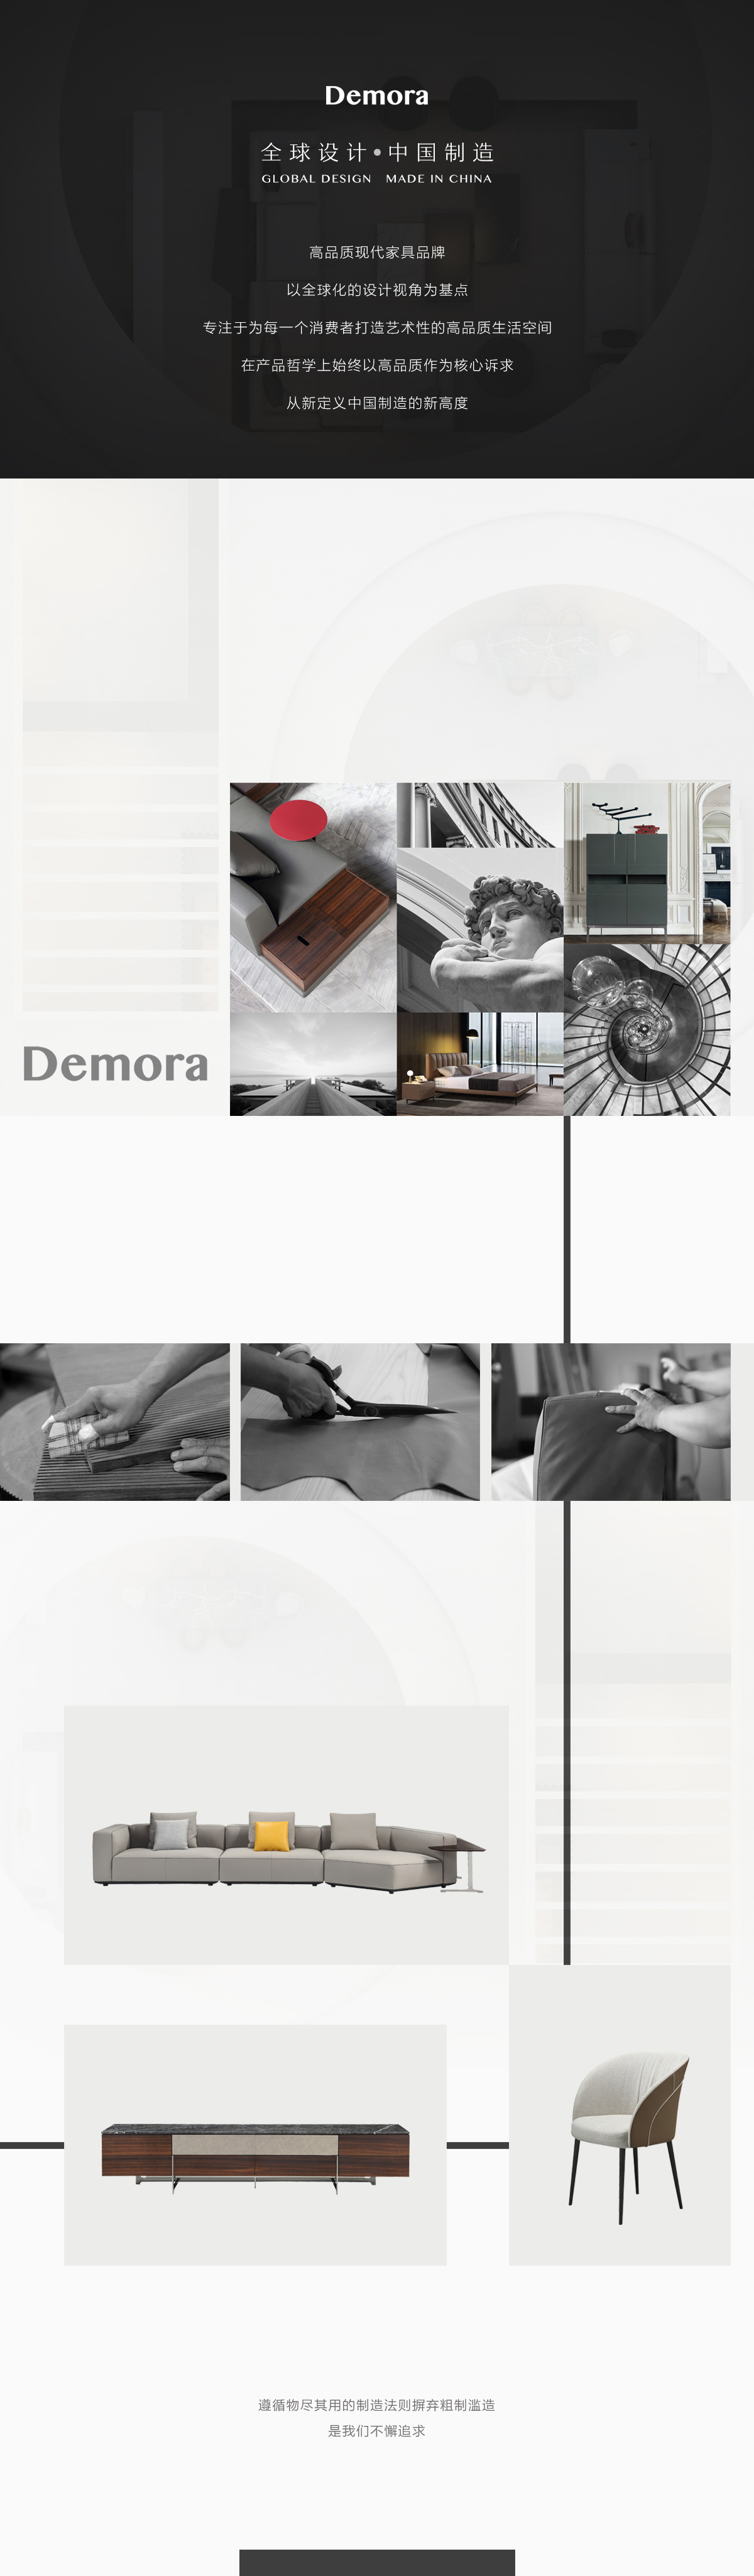 品牌頁-Demora.jpg